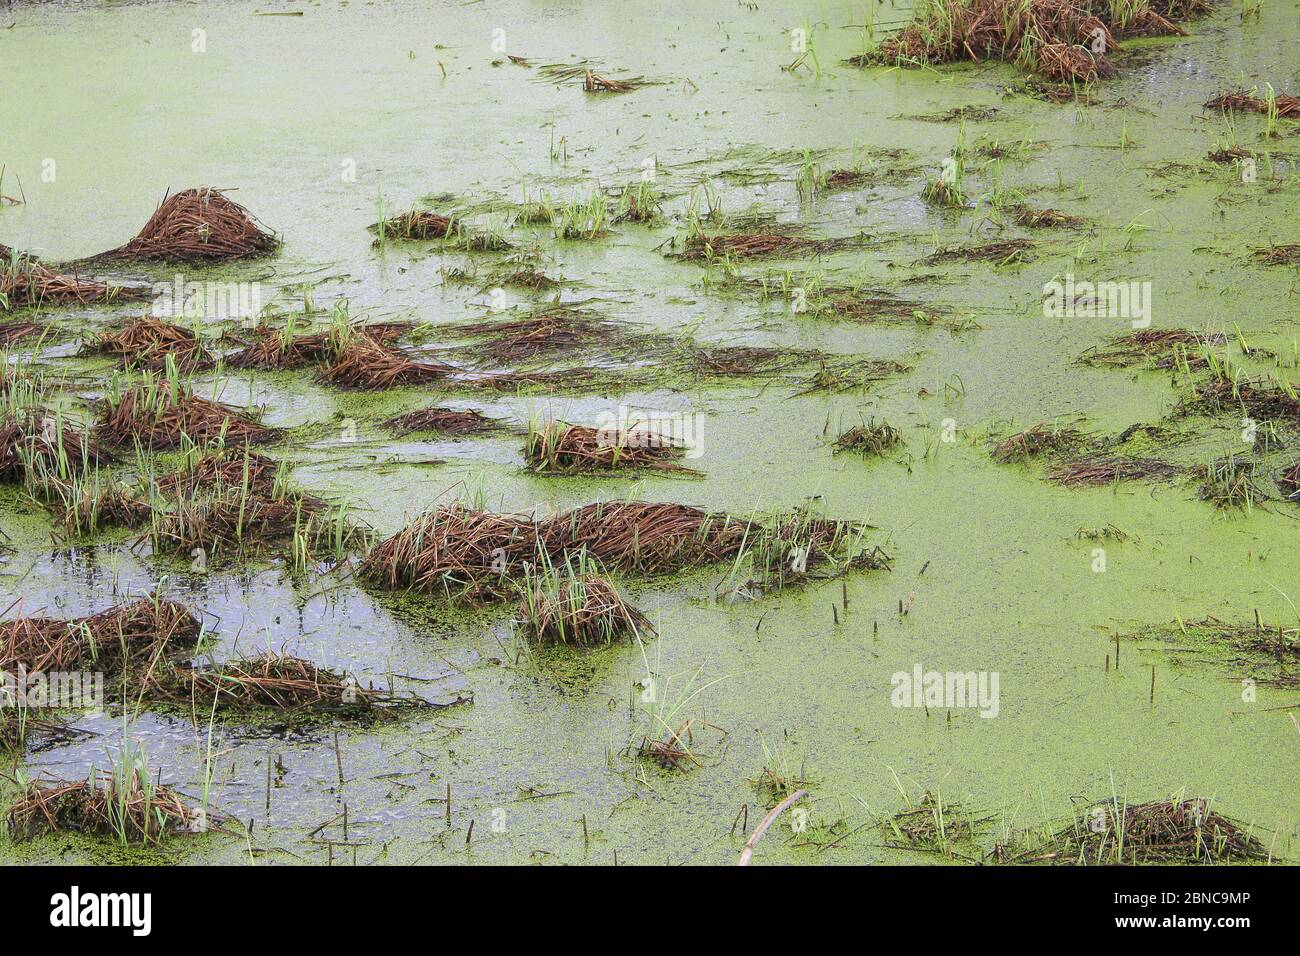 Marais avec bosses, herbe et boue verte. Duckweed à la surface de l'eau. Étang surcultivé. Carottes avec grenouilles. Tourbière humide dangereuse. Banque D'Images